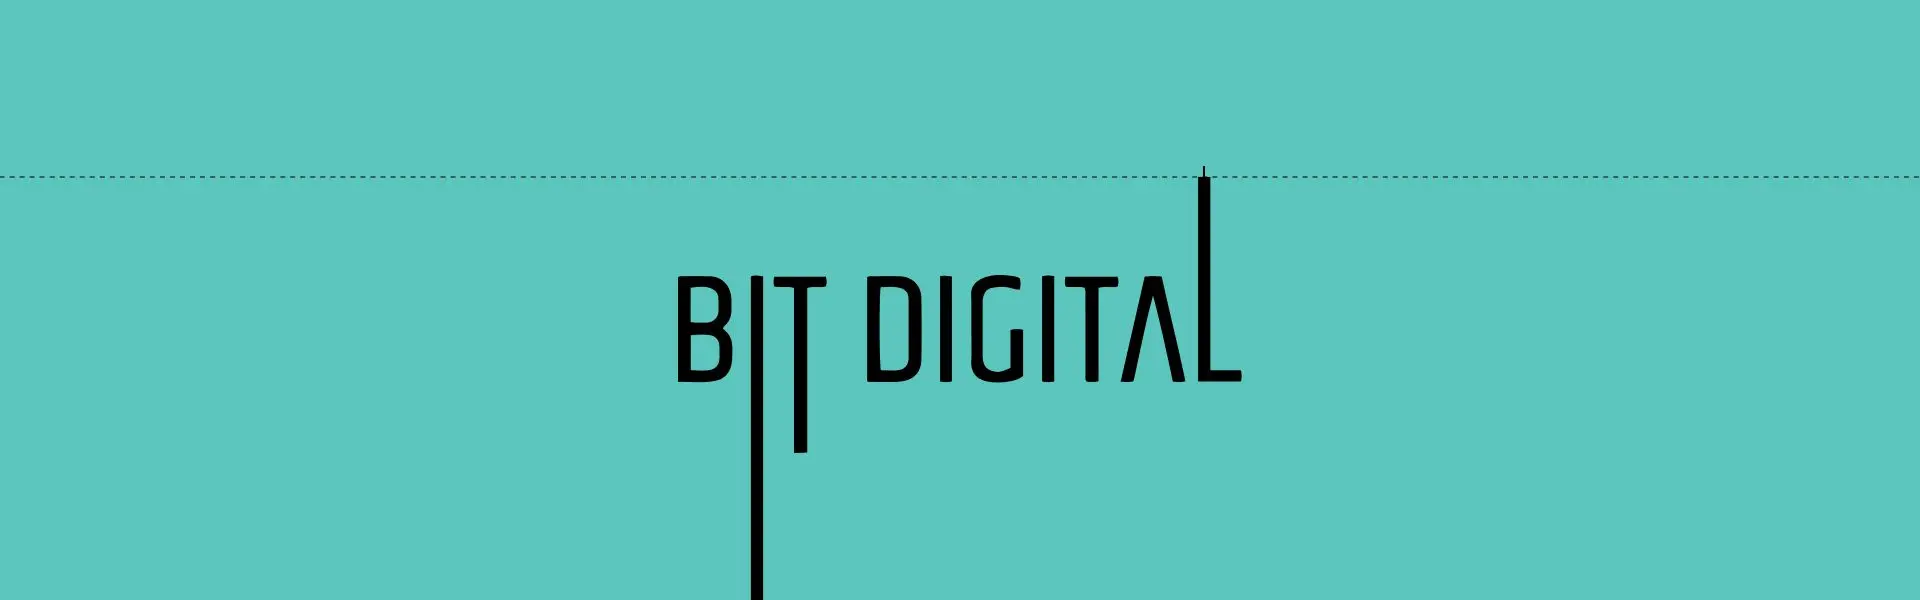 Доходи гірника Bit Digital зросли більше, ніж на третину.